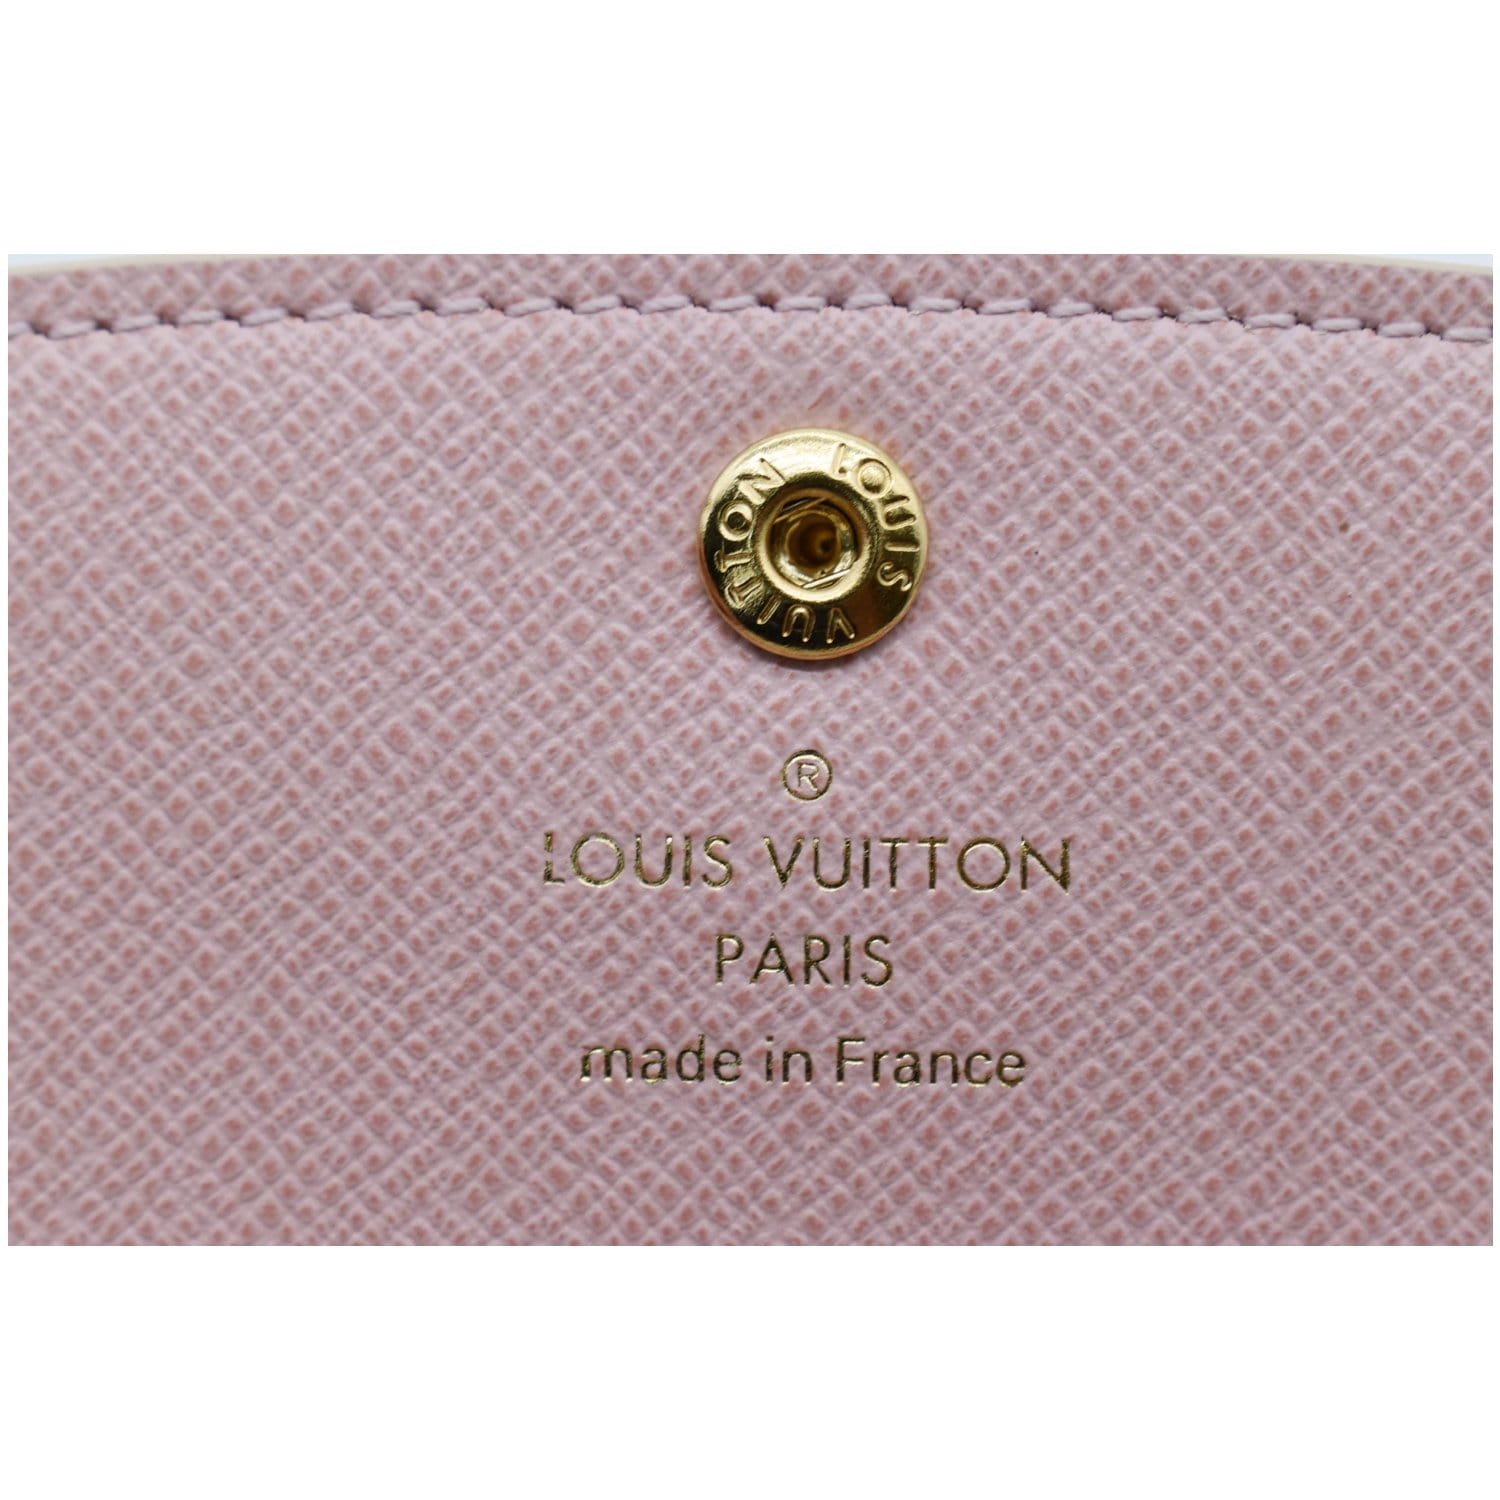 Louis Vuitton Damier Emilie Wallet, Pink